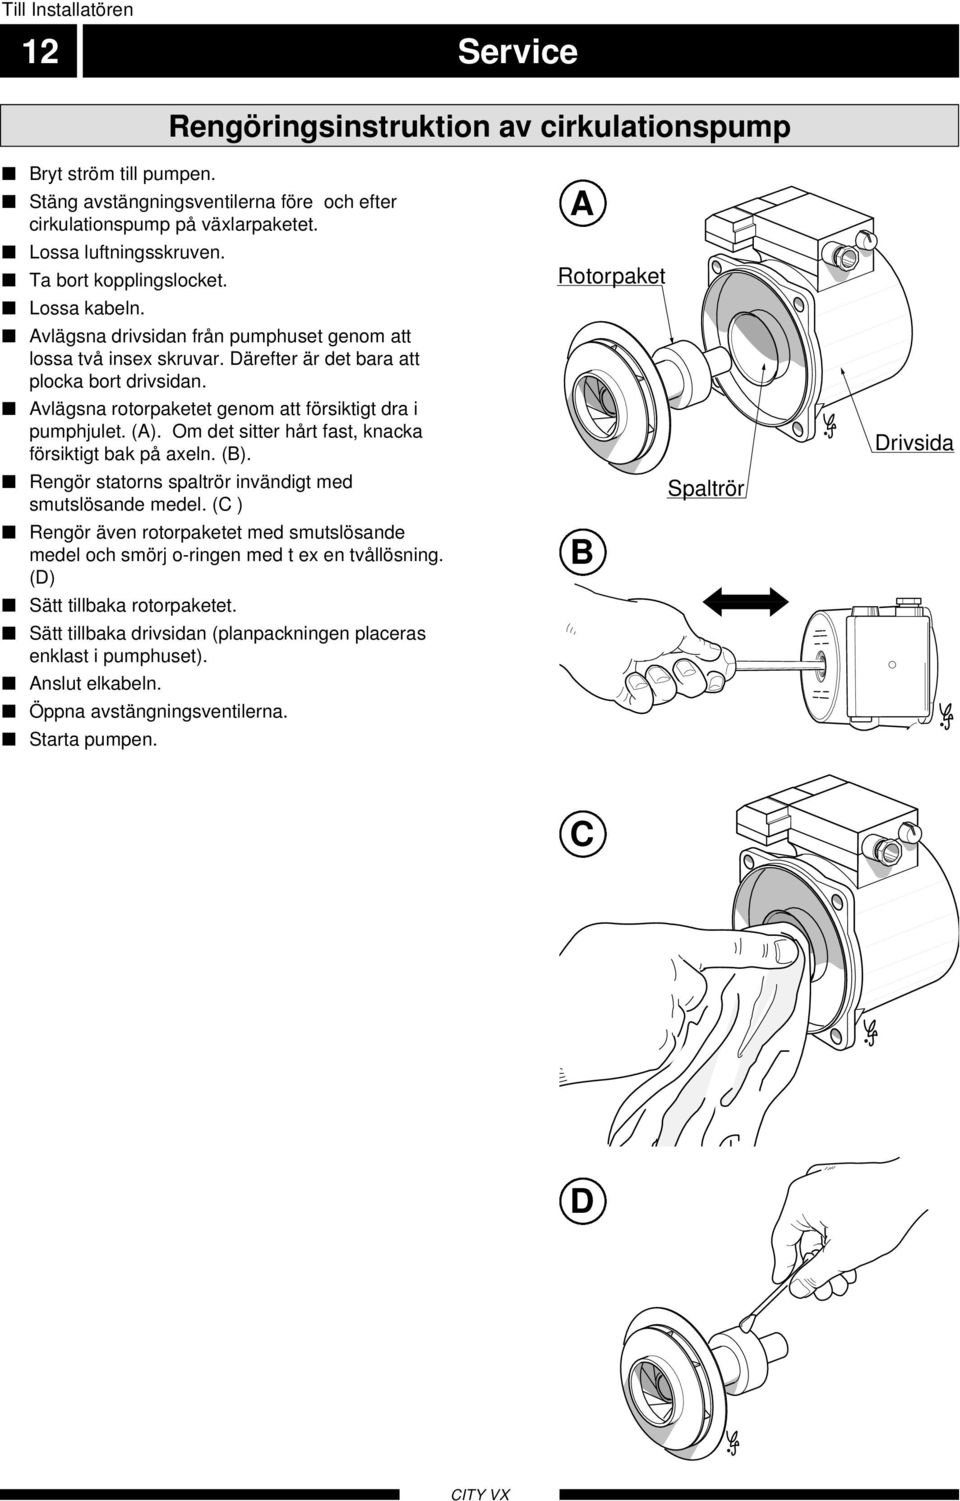 Avlägsna rotorpaketet genom att försiktigt dra i pumphjulet. (A). Om det sitter hårt fast, knacka försiktigt bak på axeln. (B). Rengör statorns spaltrör invändigt med smutslösande medel.